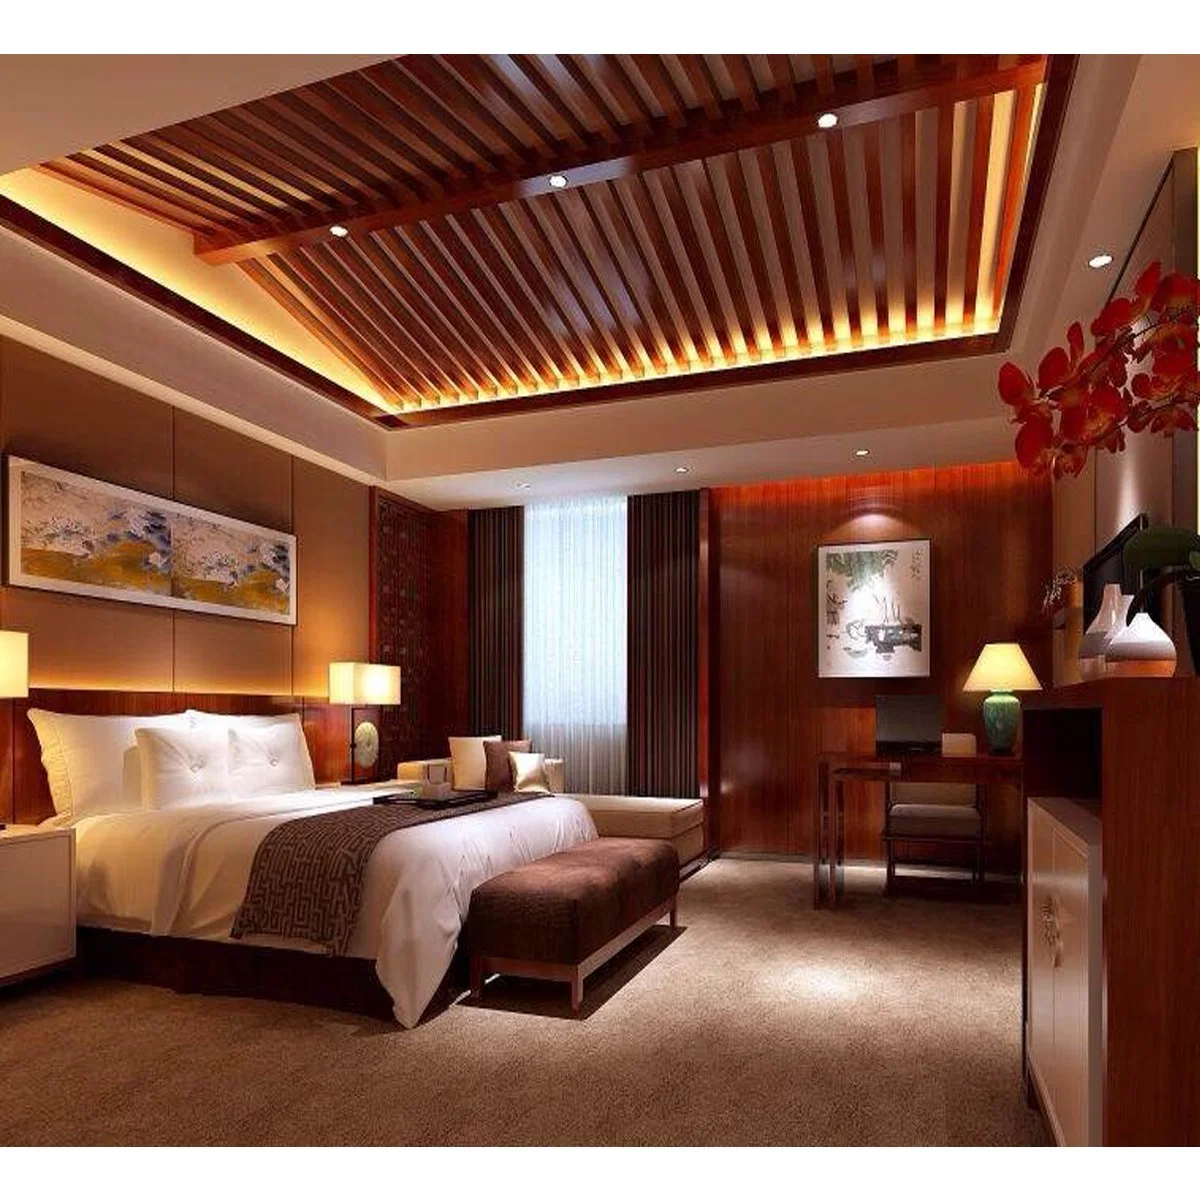 Hilton Hospitality Suite 5 Star Modern Wooden Hotel King Bedroom Furniture Sets